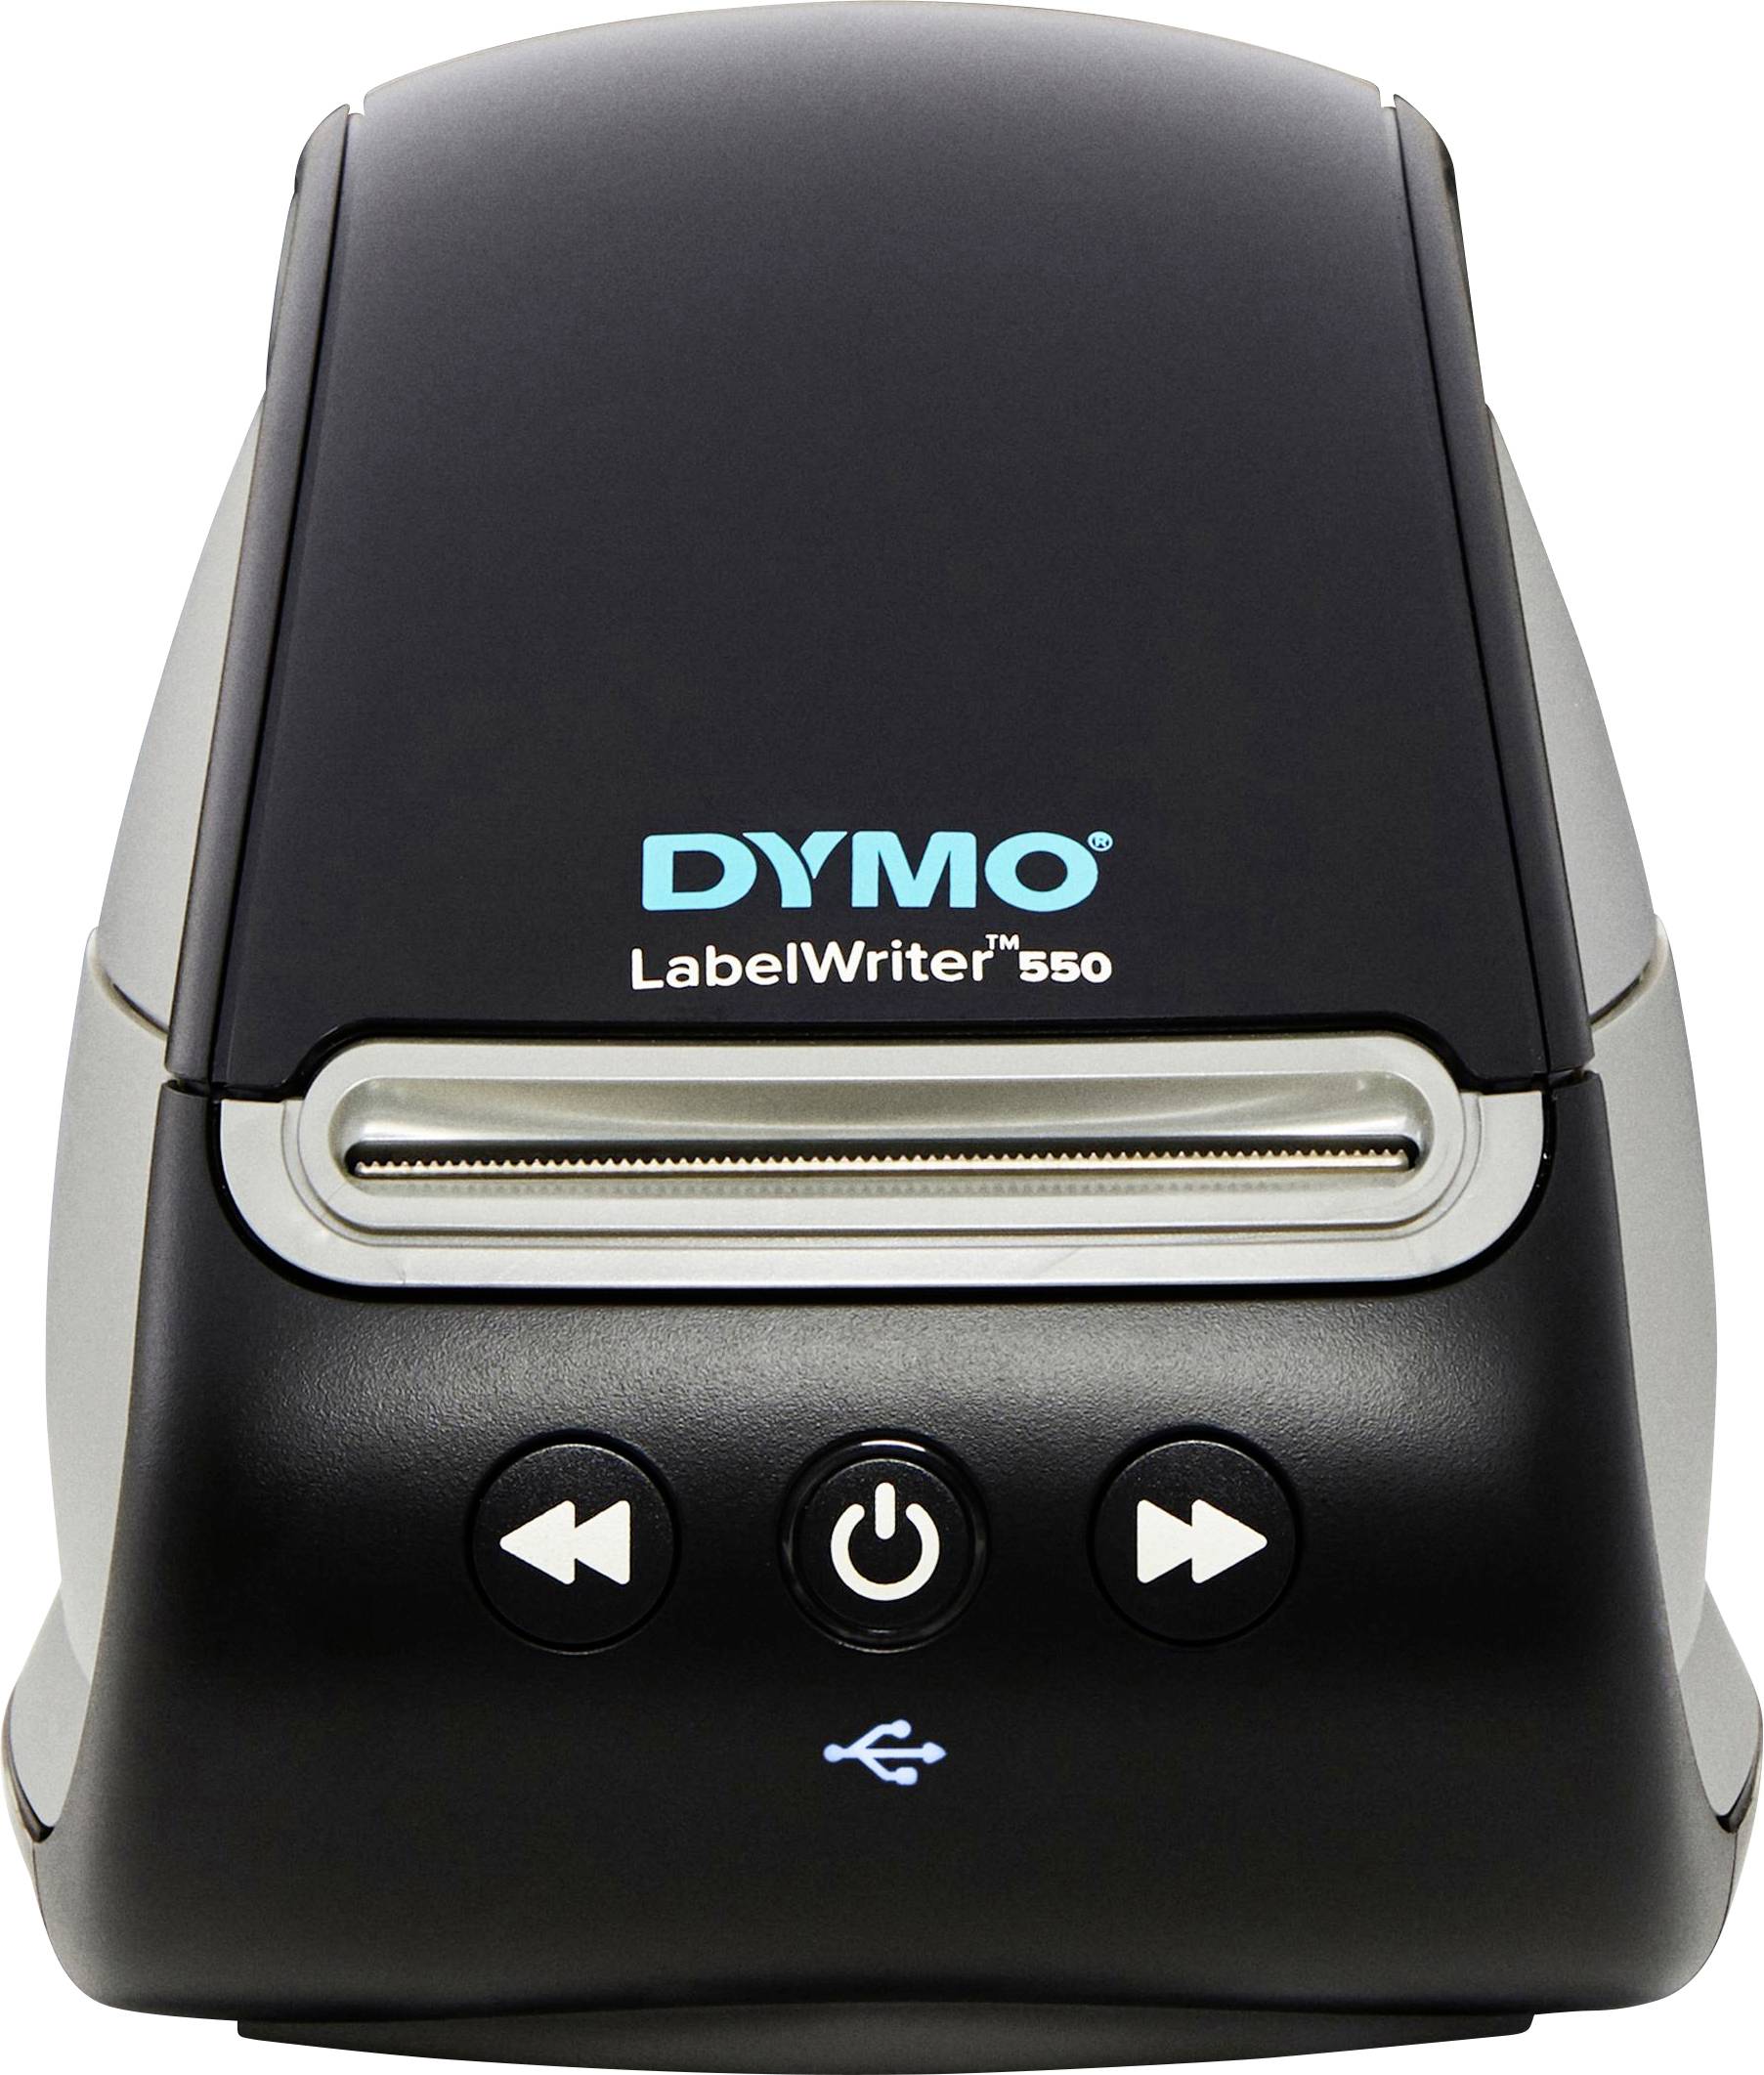 Imprimante d'étiquettes Dymo LabelWriter 550 sur